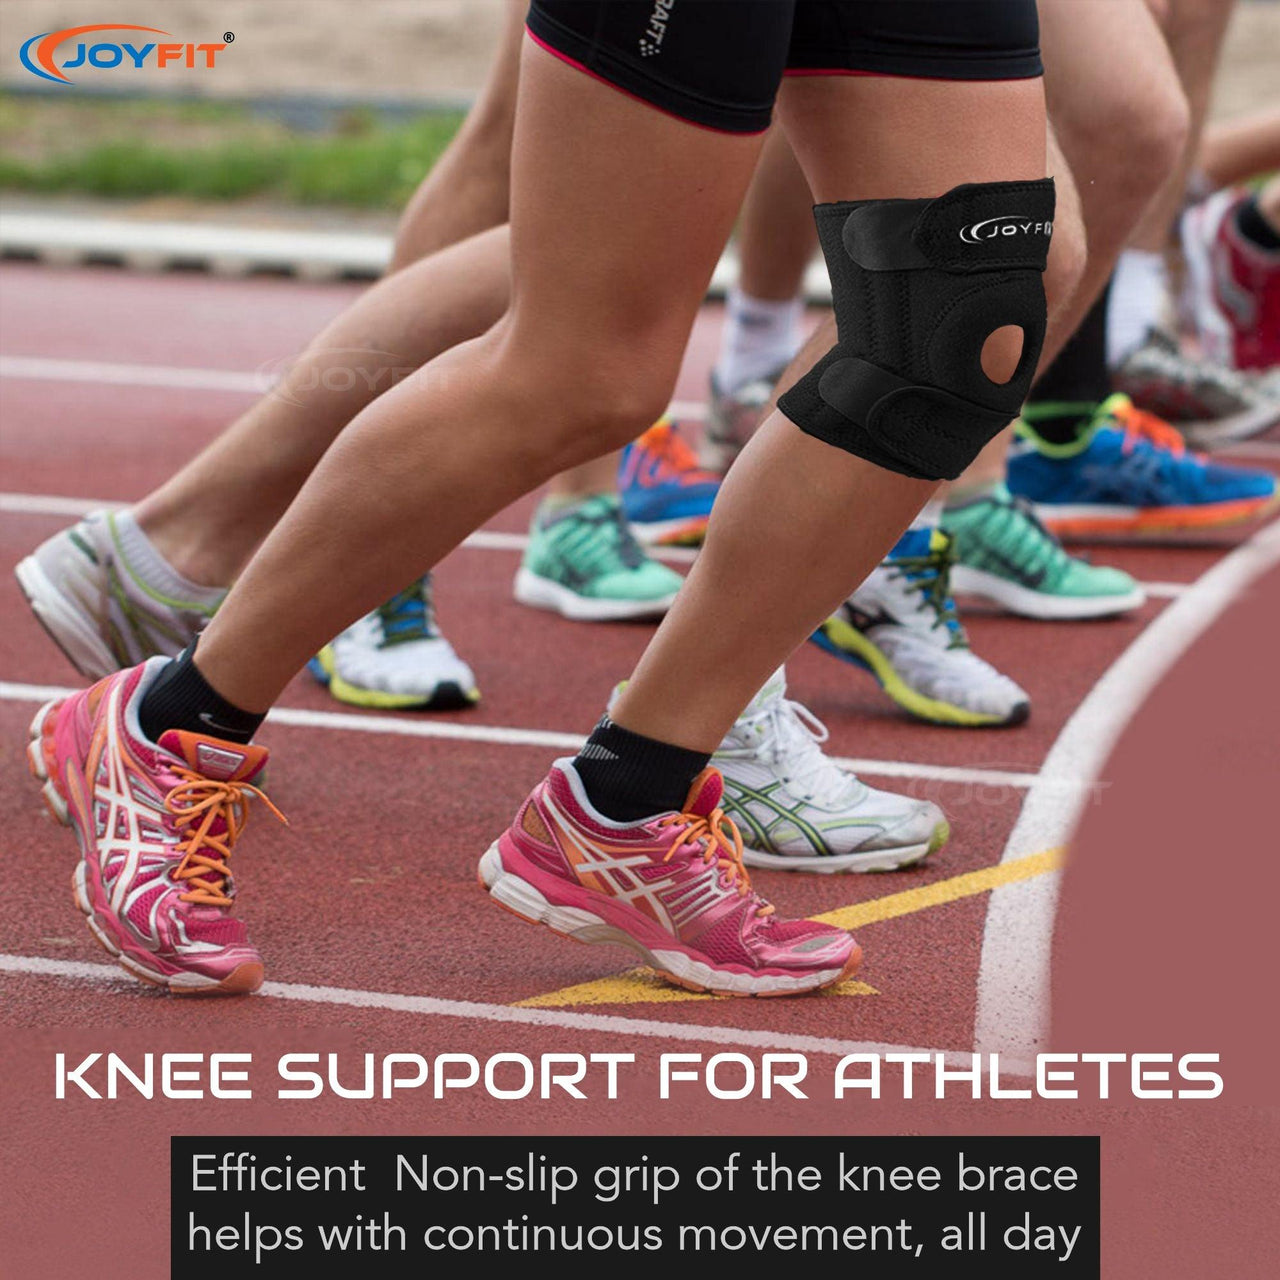 Adjustable Knee Support Brace(Single) - Joyfit